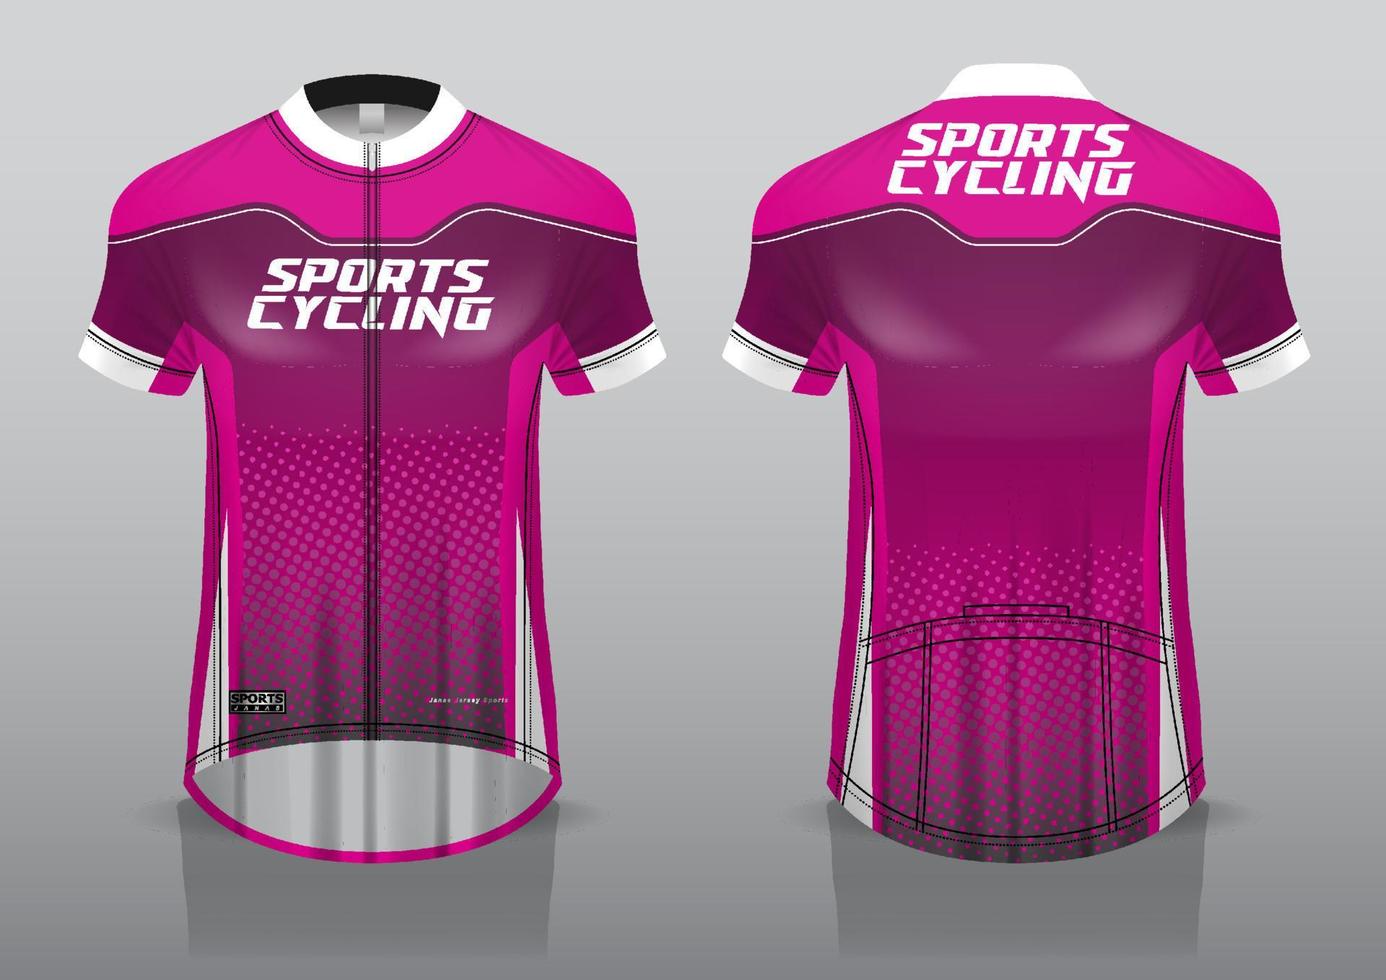 Trikot-Design für den Radsport, Vorder- und Rückansicht, schicke Uniform und einfach zu bearbeiten und zu drucken, Radsport-Teamuniform vektor